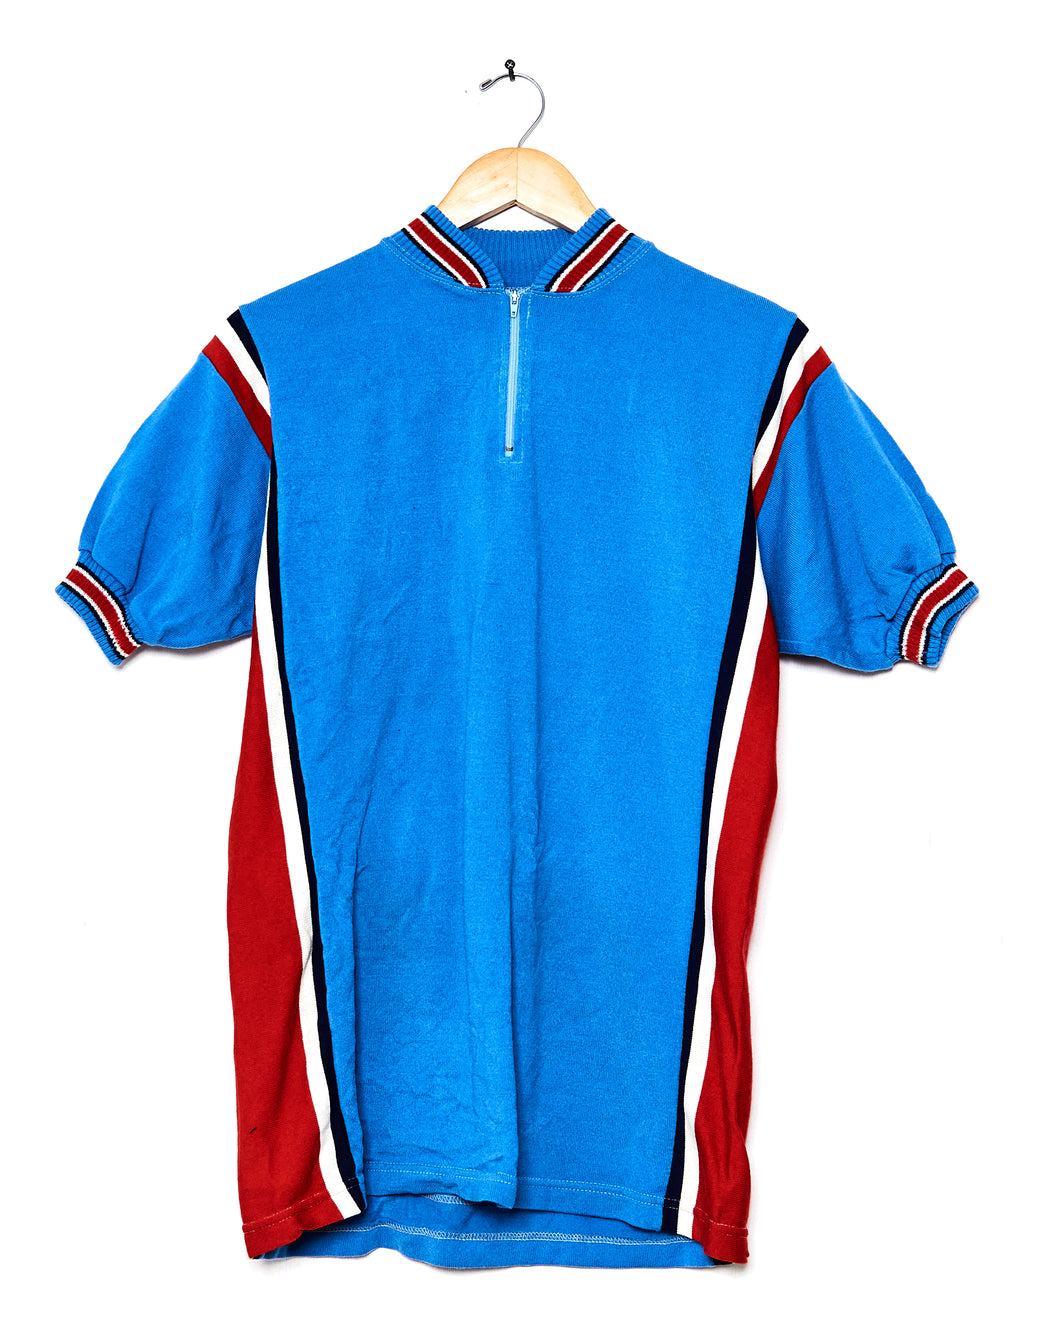 1970s Campitello Cycling Jersey